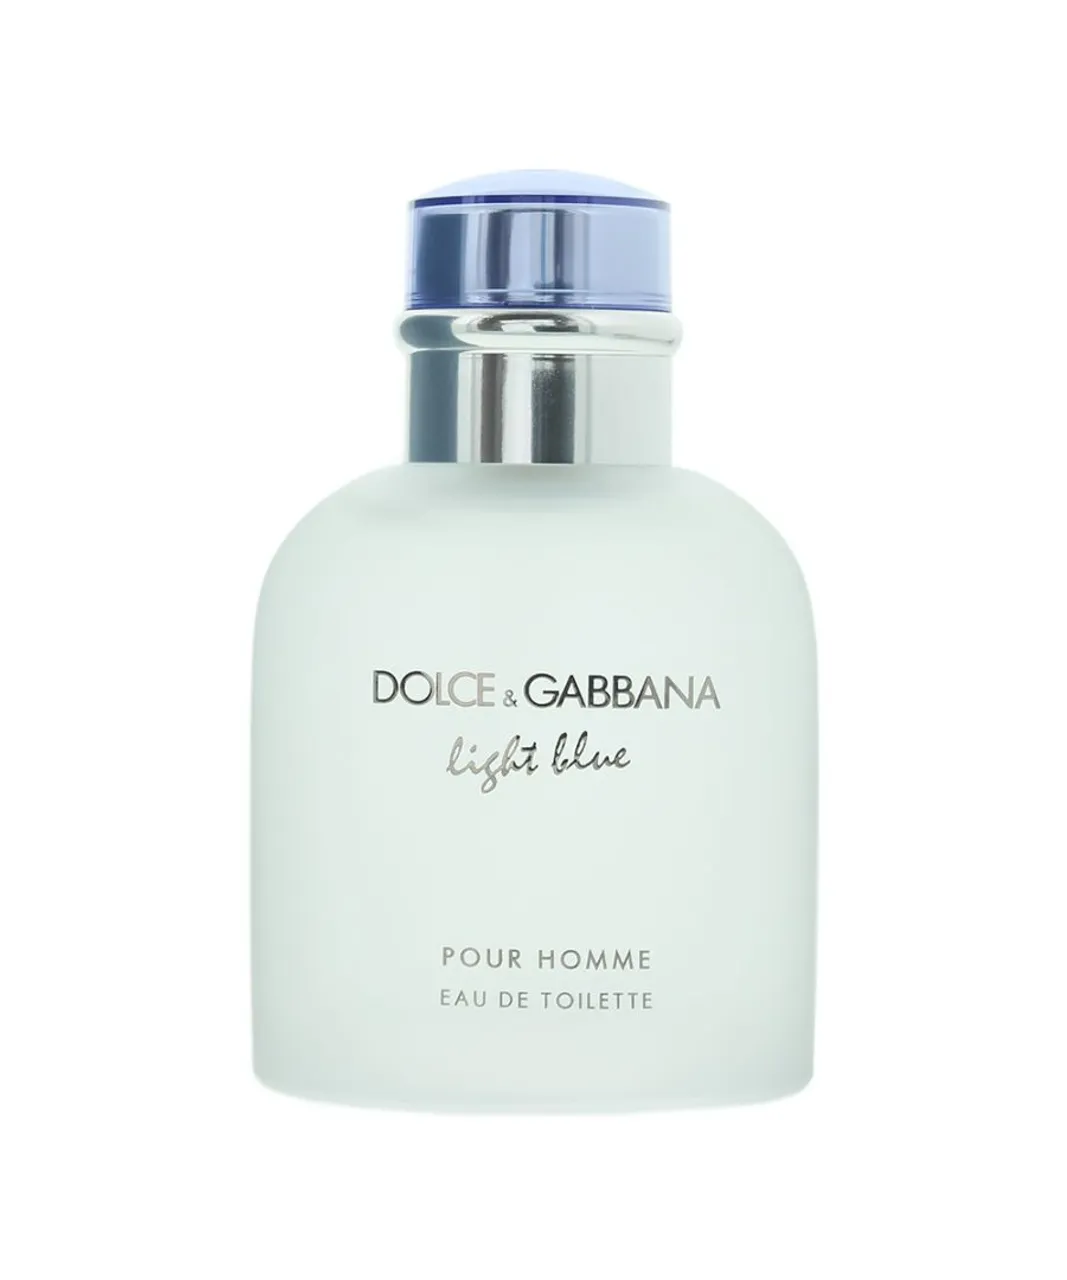 Dolce & Gabbana Mens Light Blue Pour Homme Eau de Toilette 75ml Spray for Him - One Size